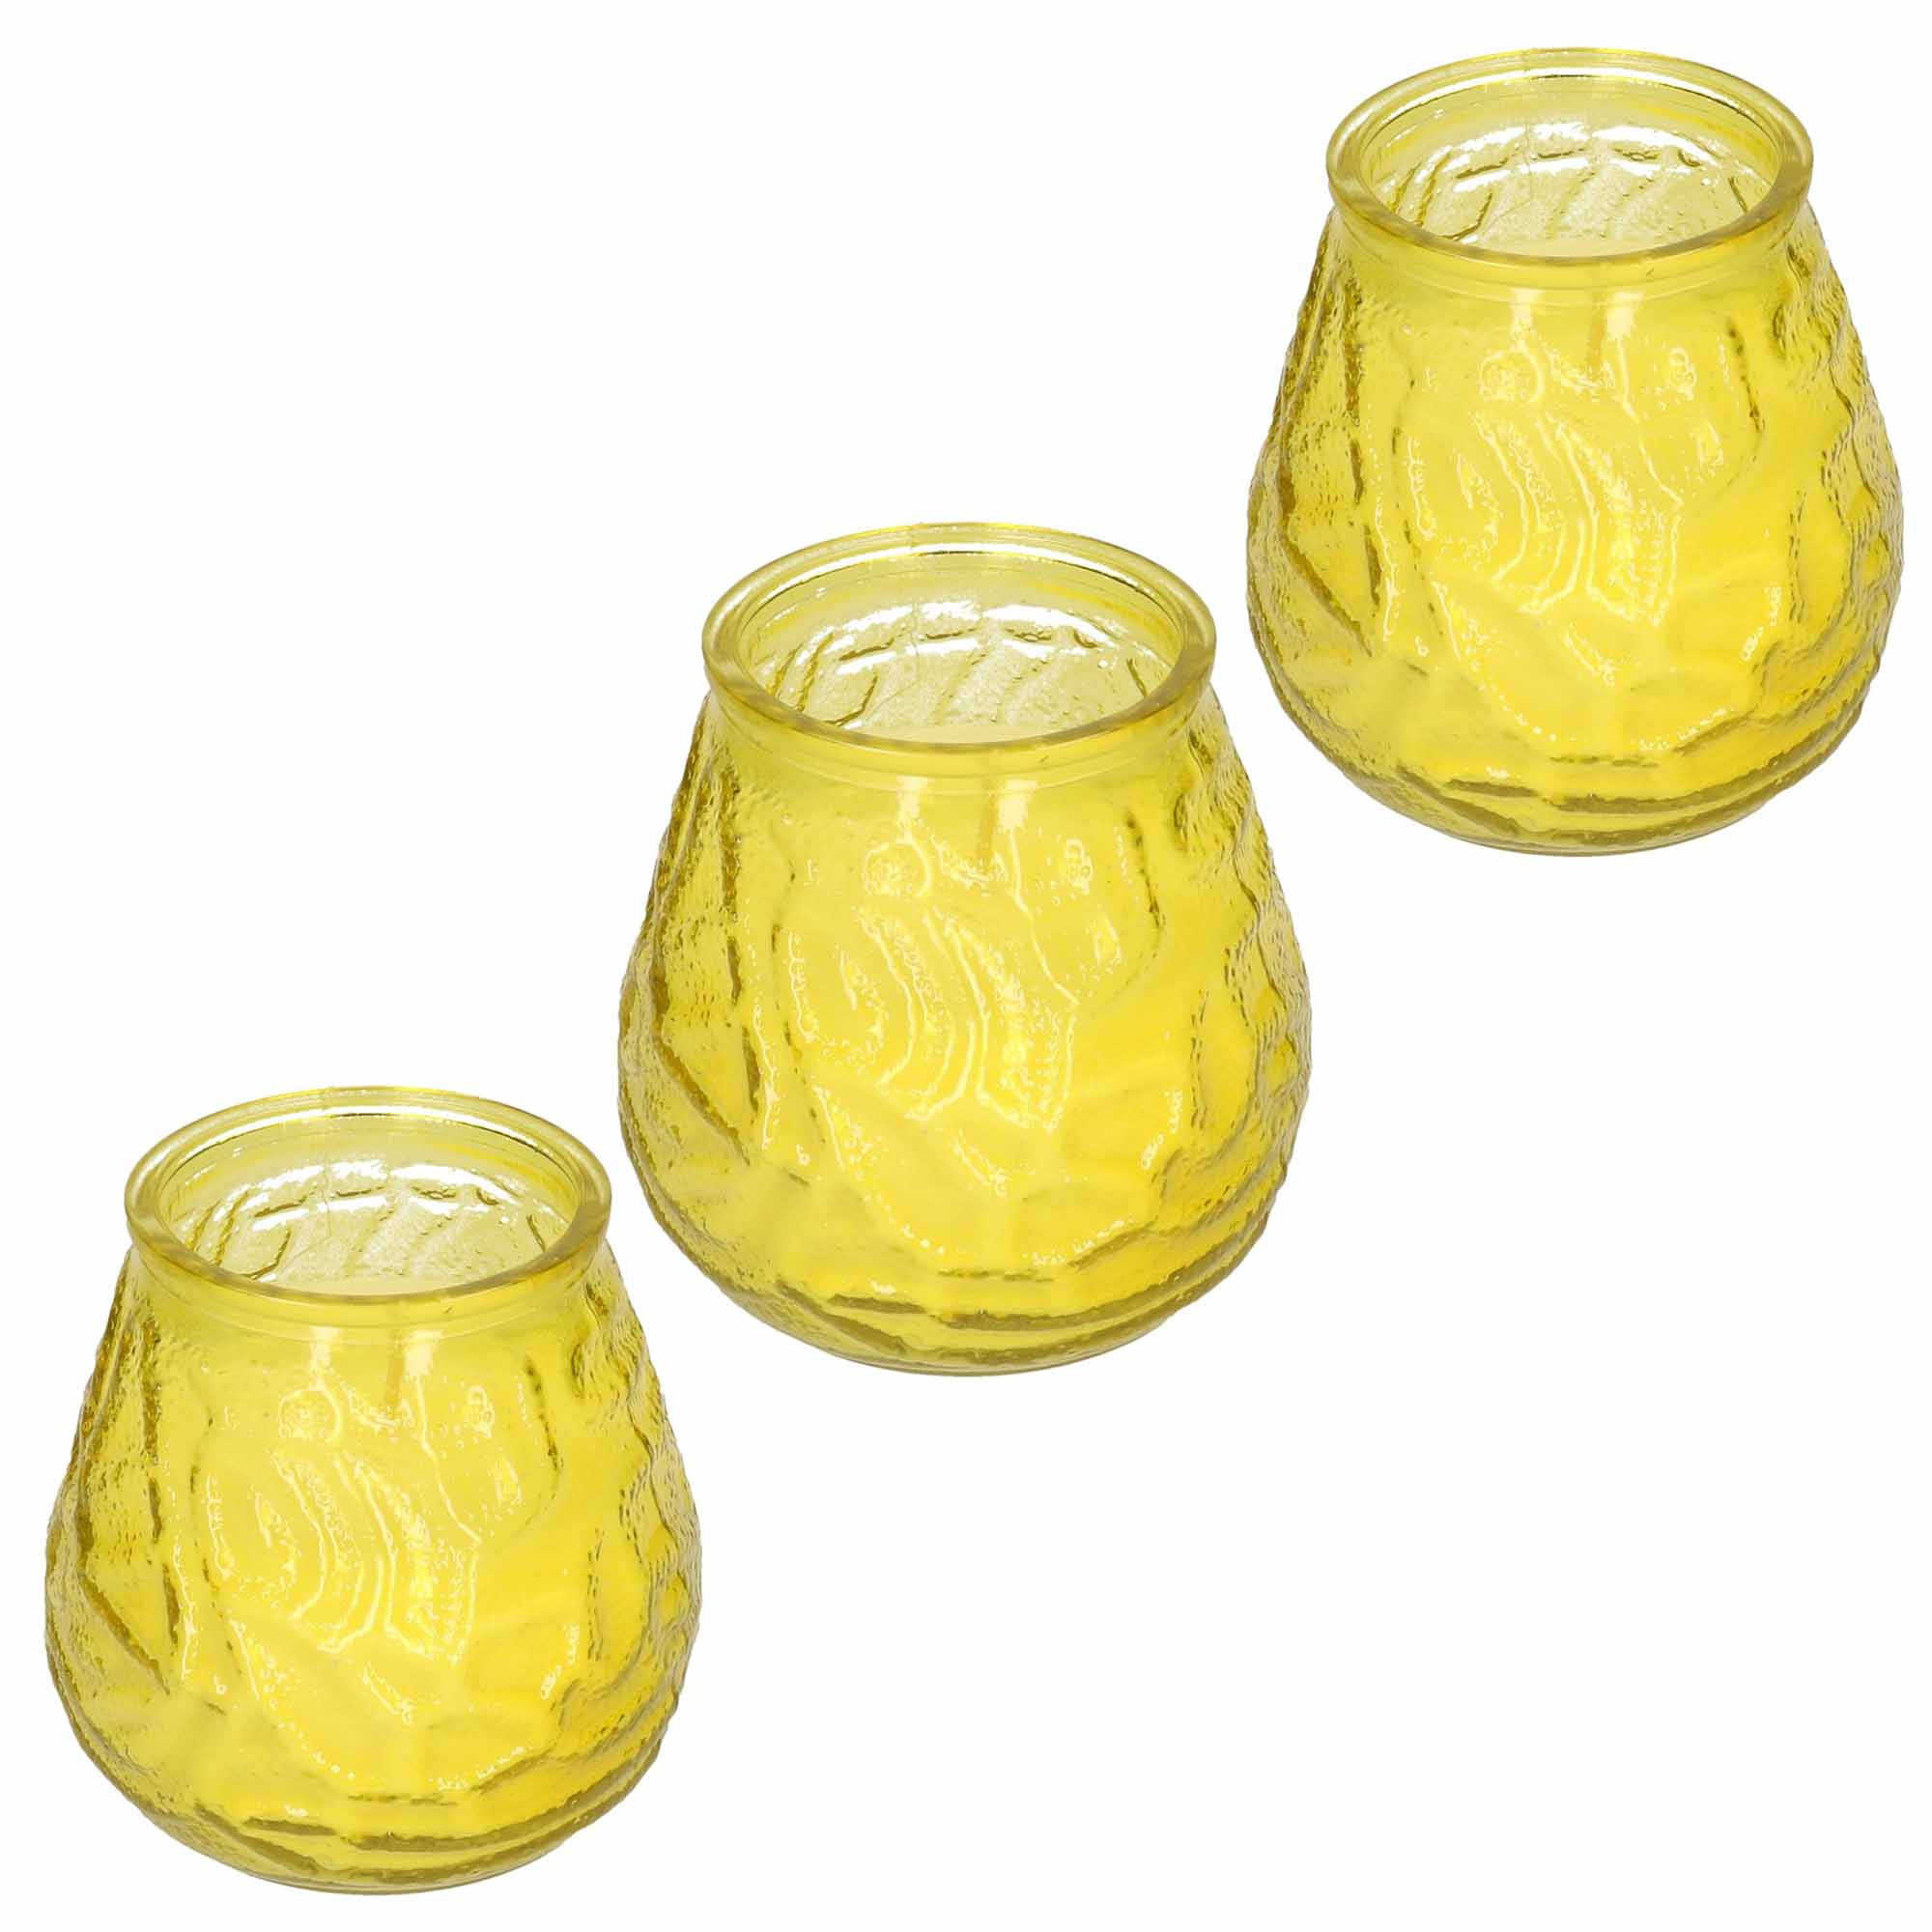 Windlicht geurkaars 3x geel glas 48 branduren citrusgeur